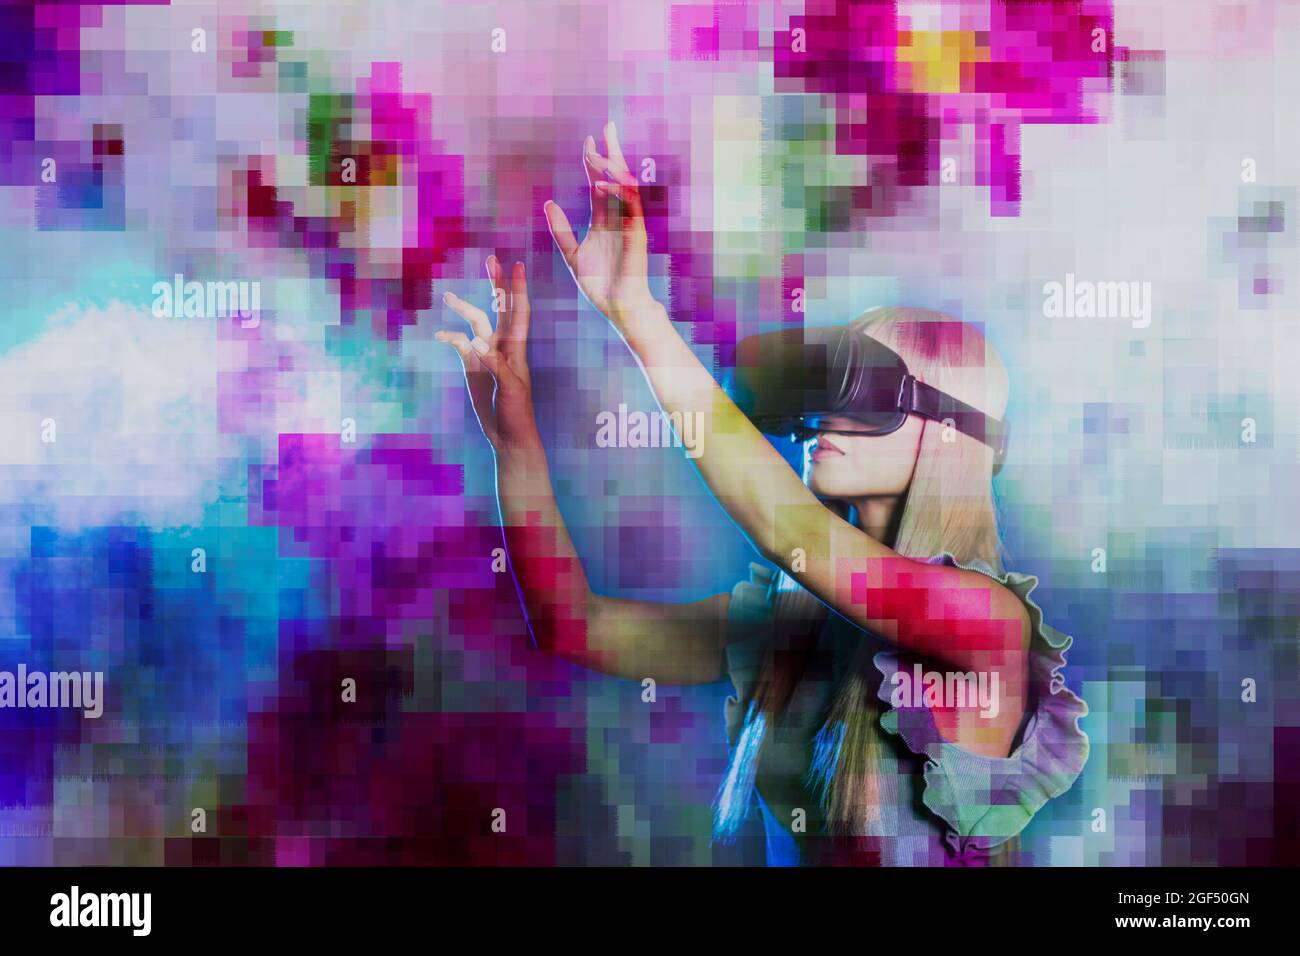 Femme portant un simulateur de réalité virtuelle faisant des gestes sur un arrière-plan pixélisé multicolore Banque D'Images